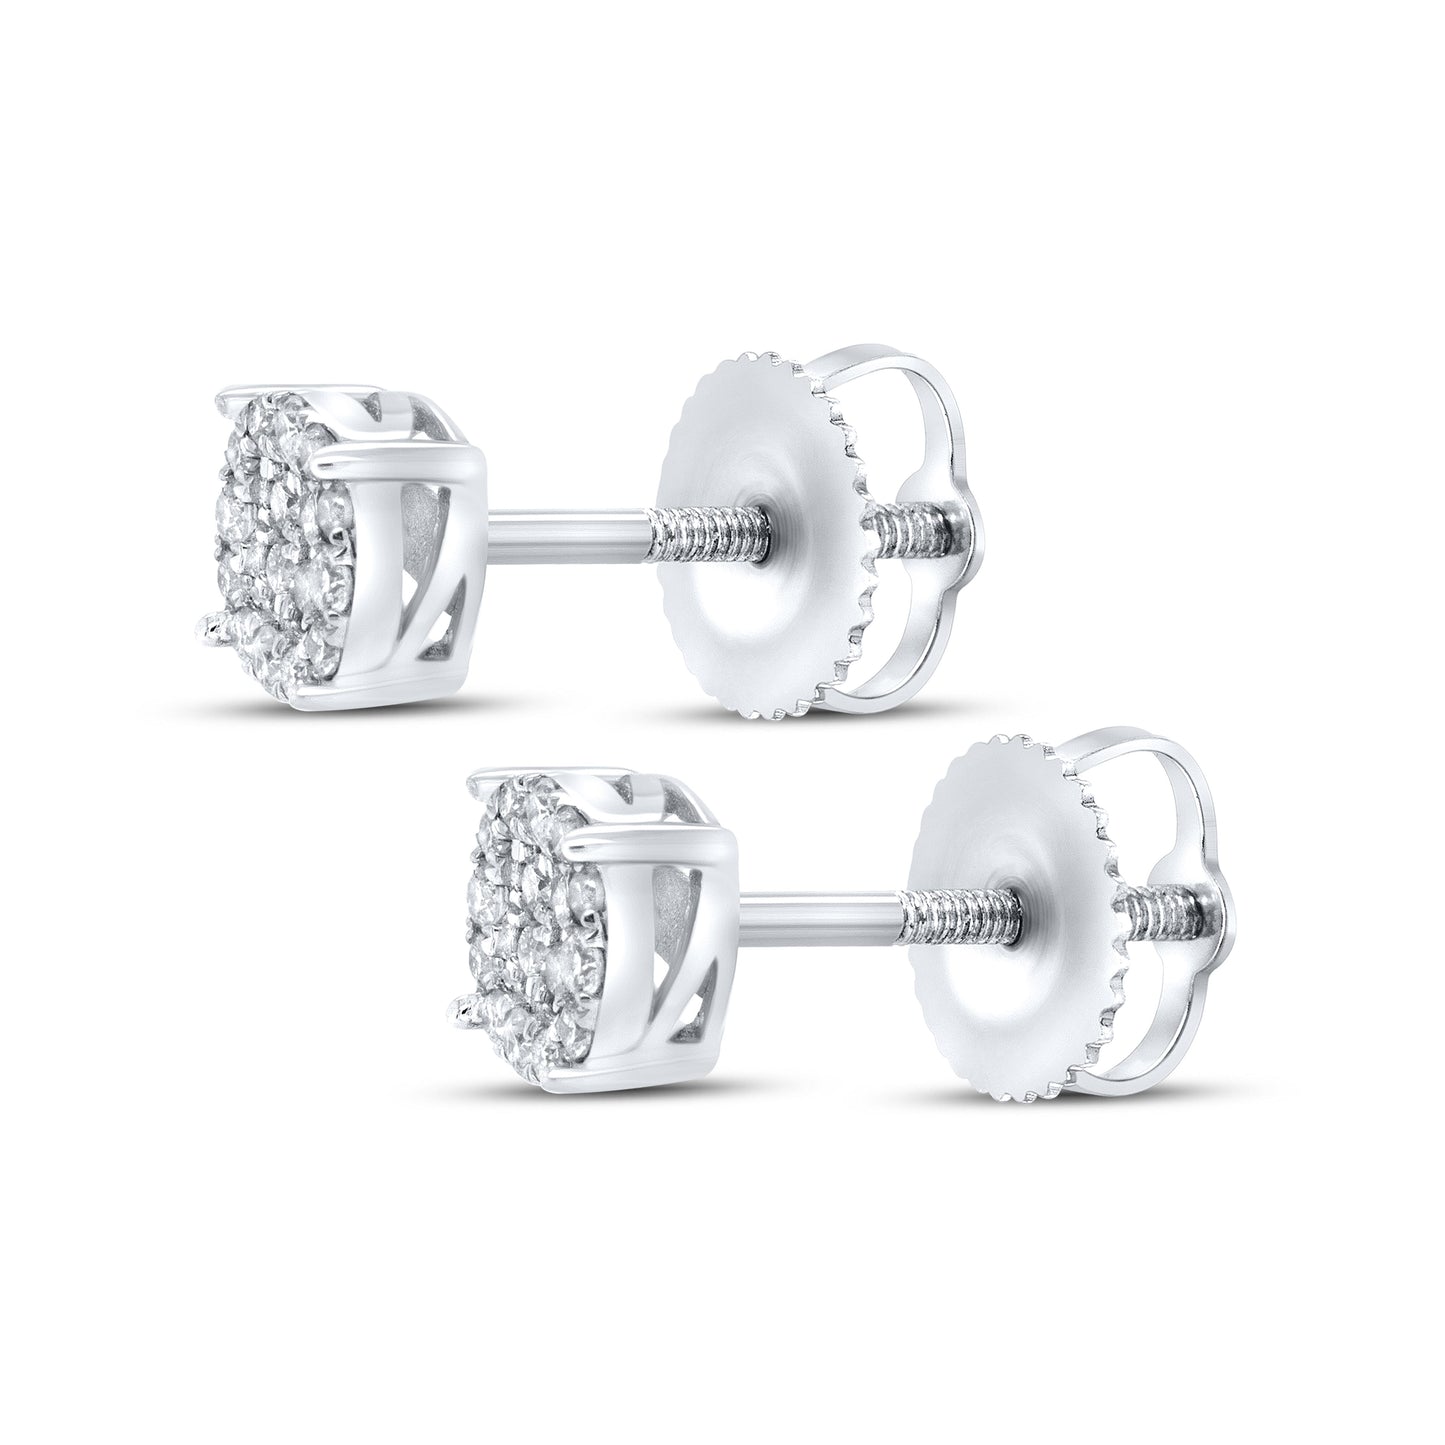 10k White gold 0.15 ctw diamond earrings